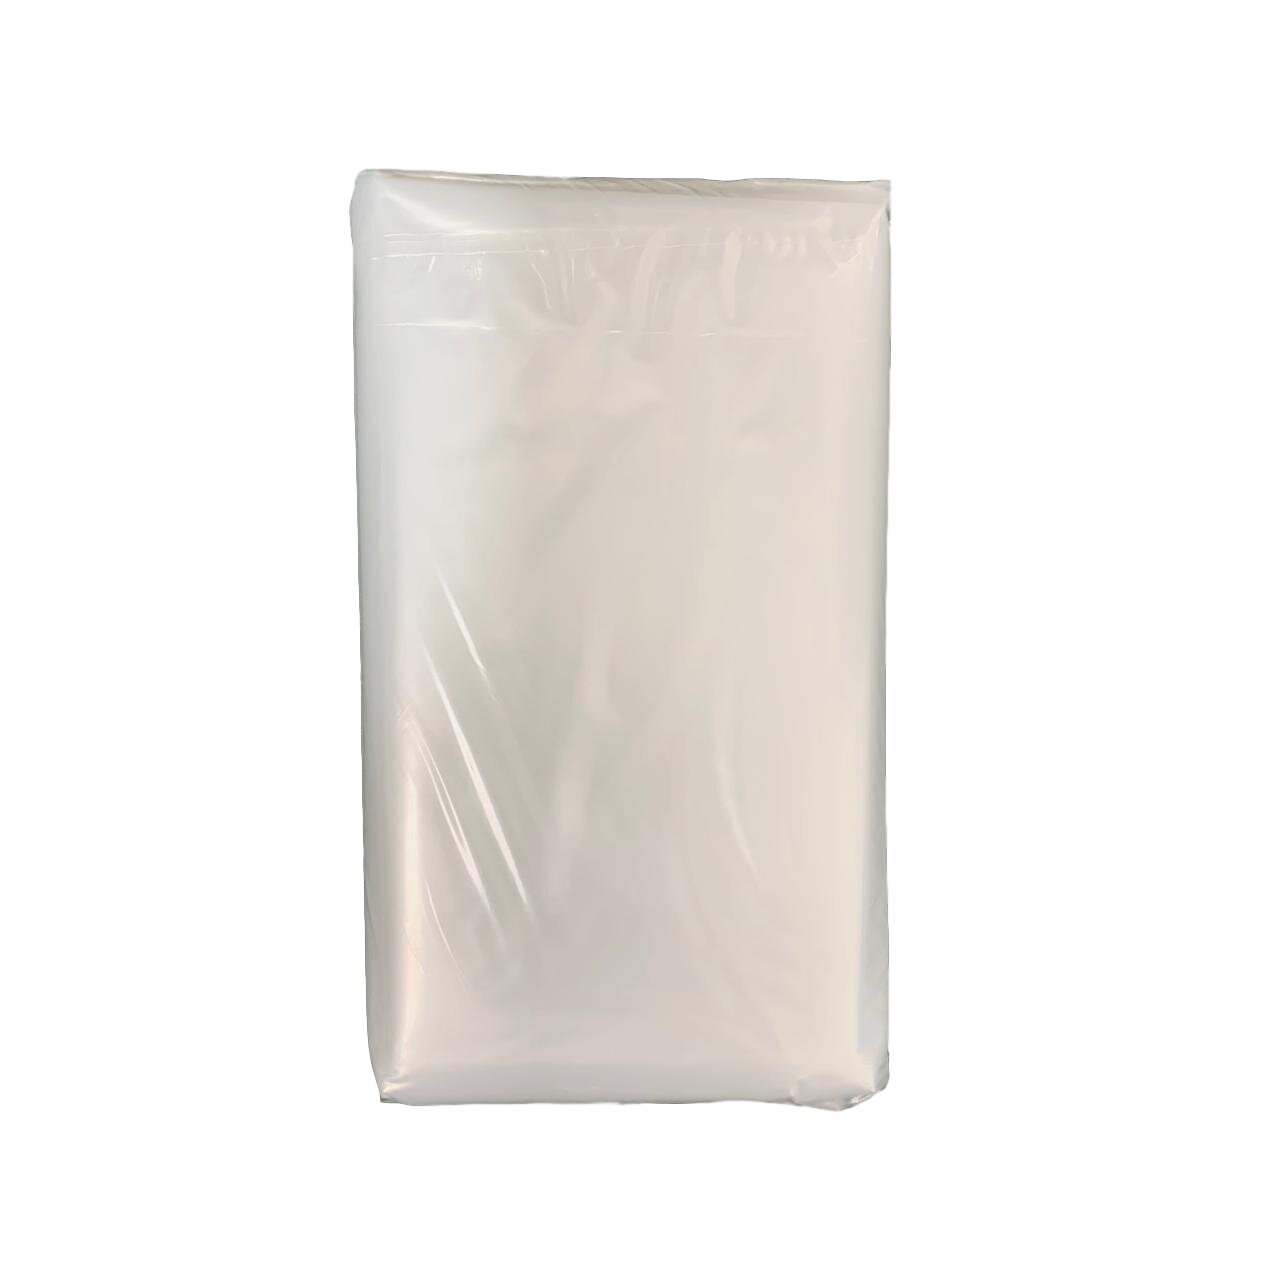 Bols de Plástico Transparente 3,9 Litros